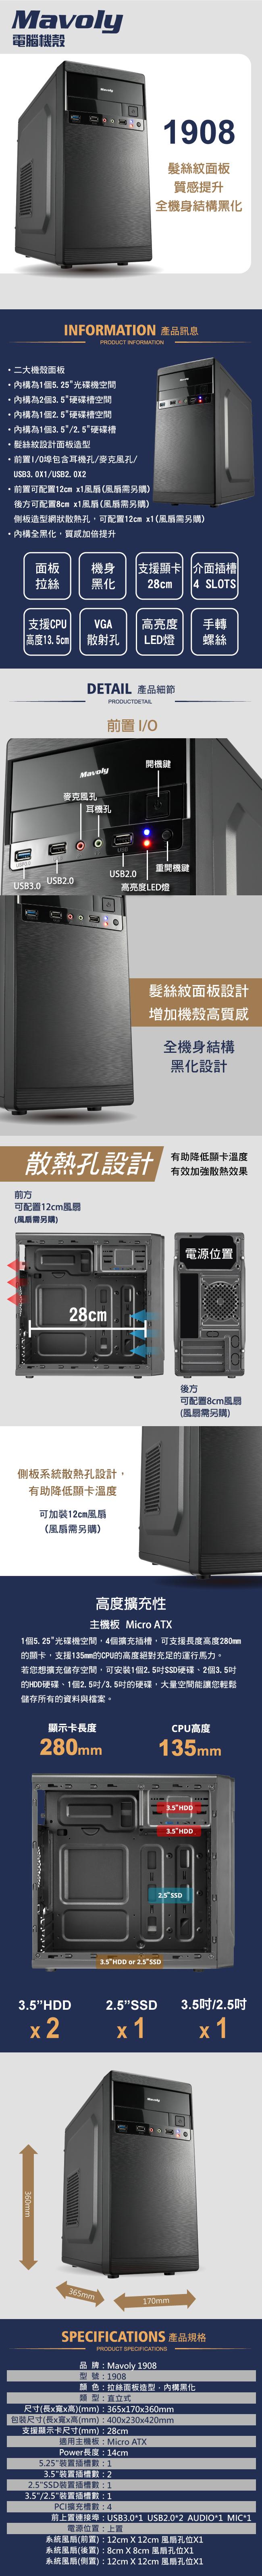 松聖 1908 M-ATX 黑化 機箱 USB3.0 加厚鋼板 素面